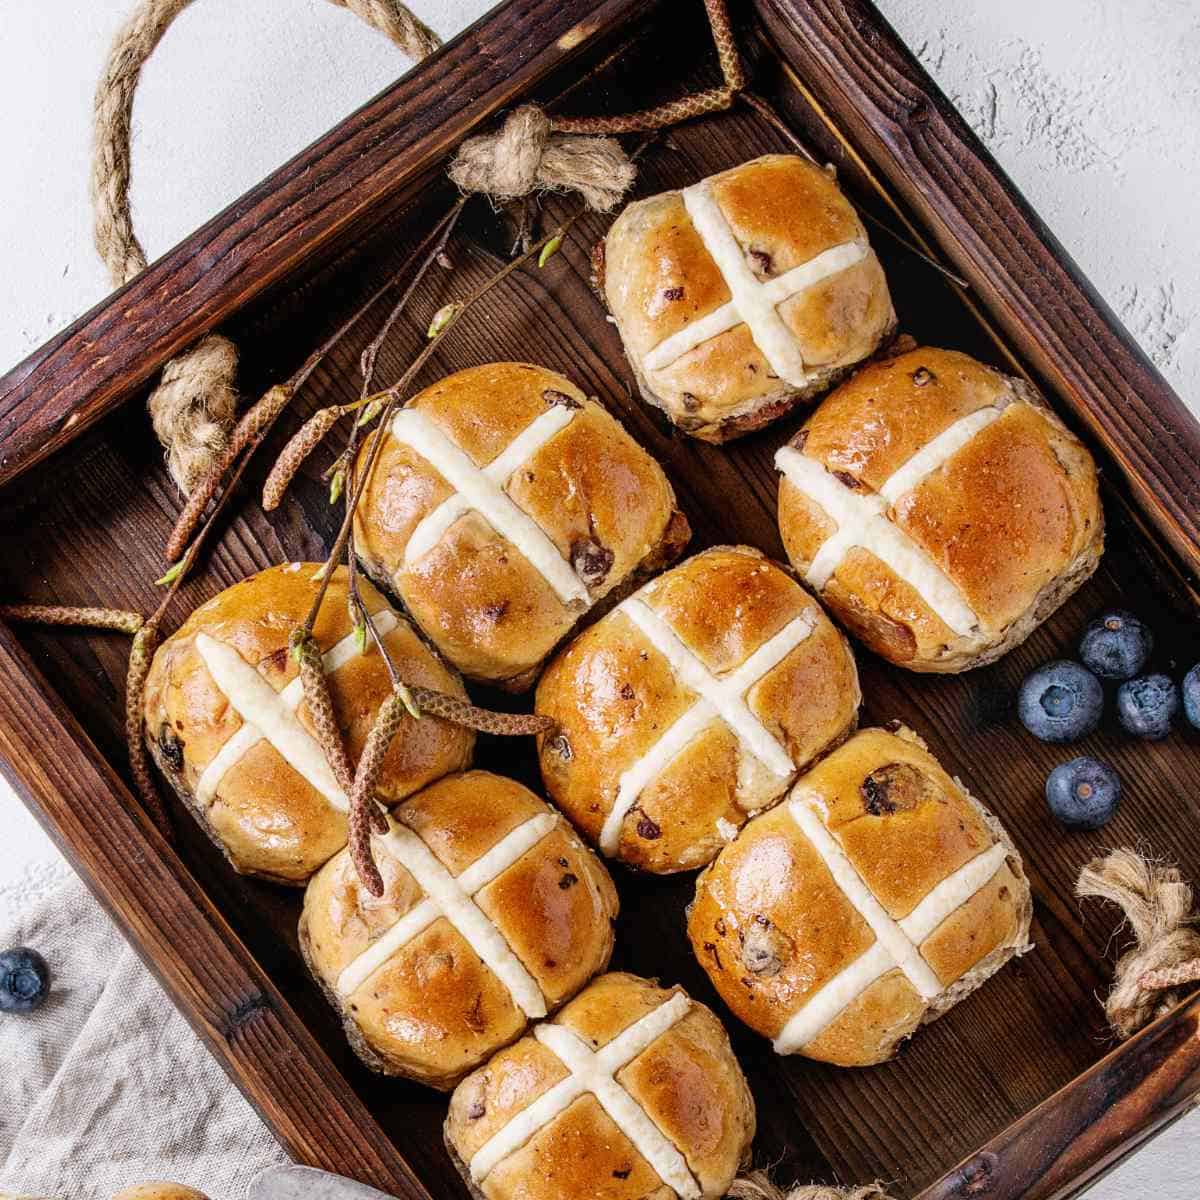 hot cross buns for Easter.